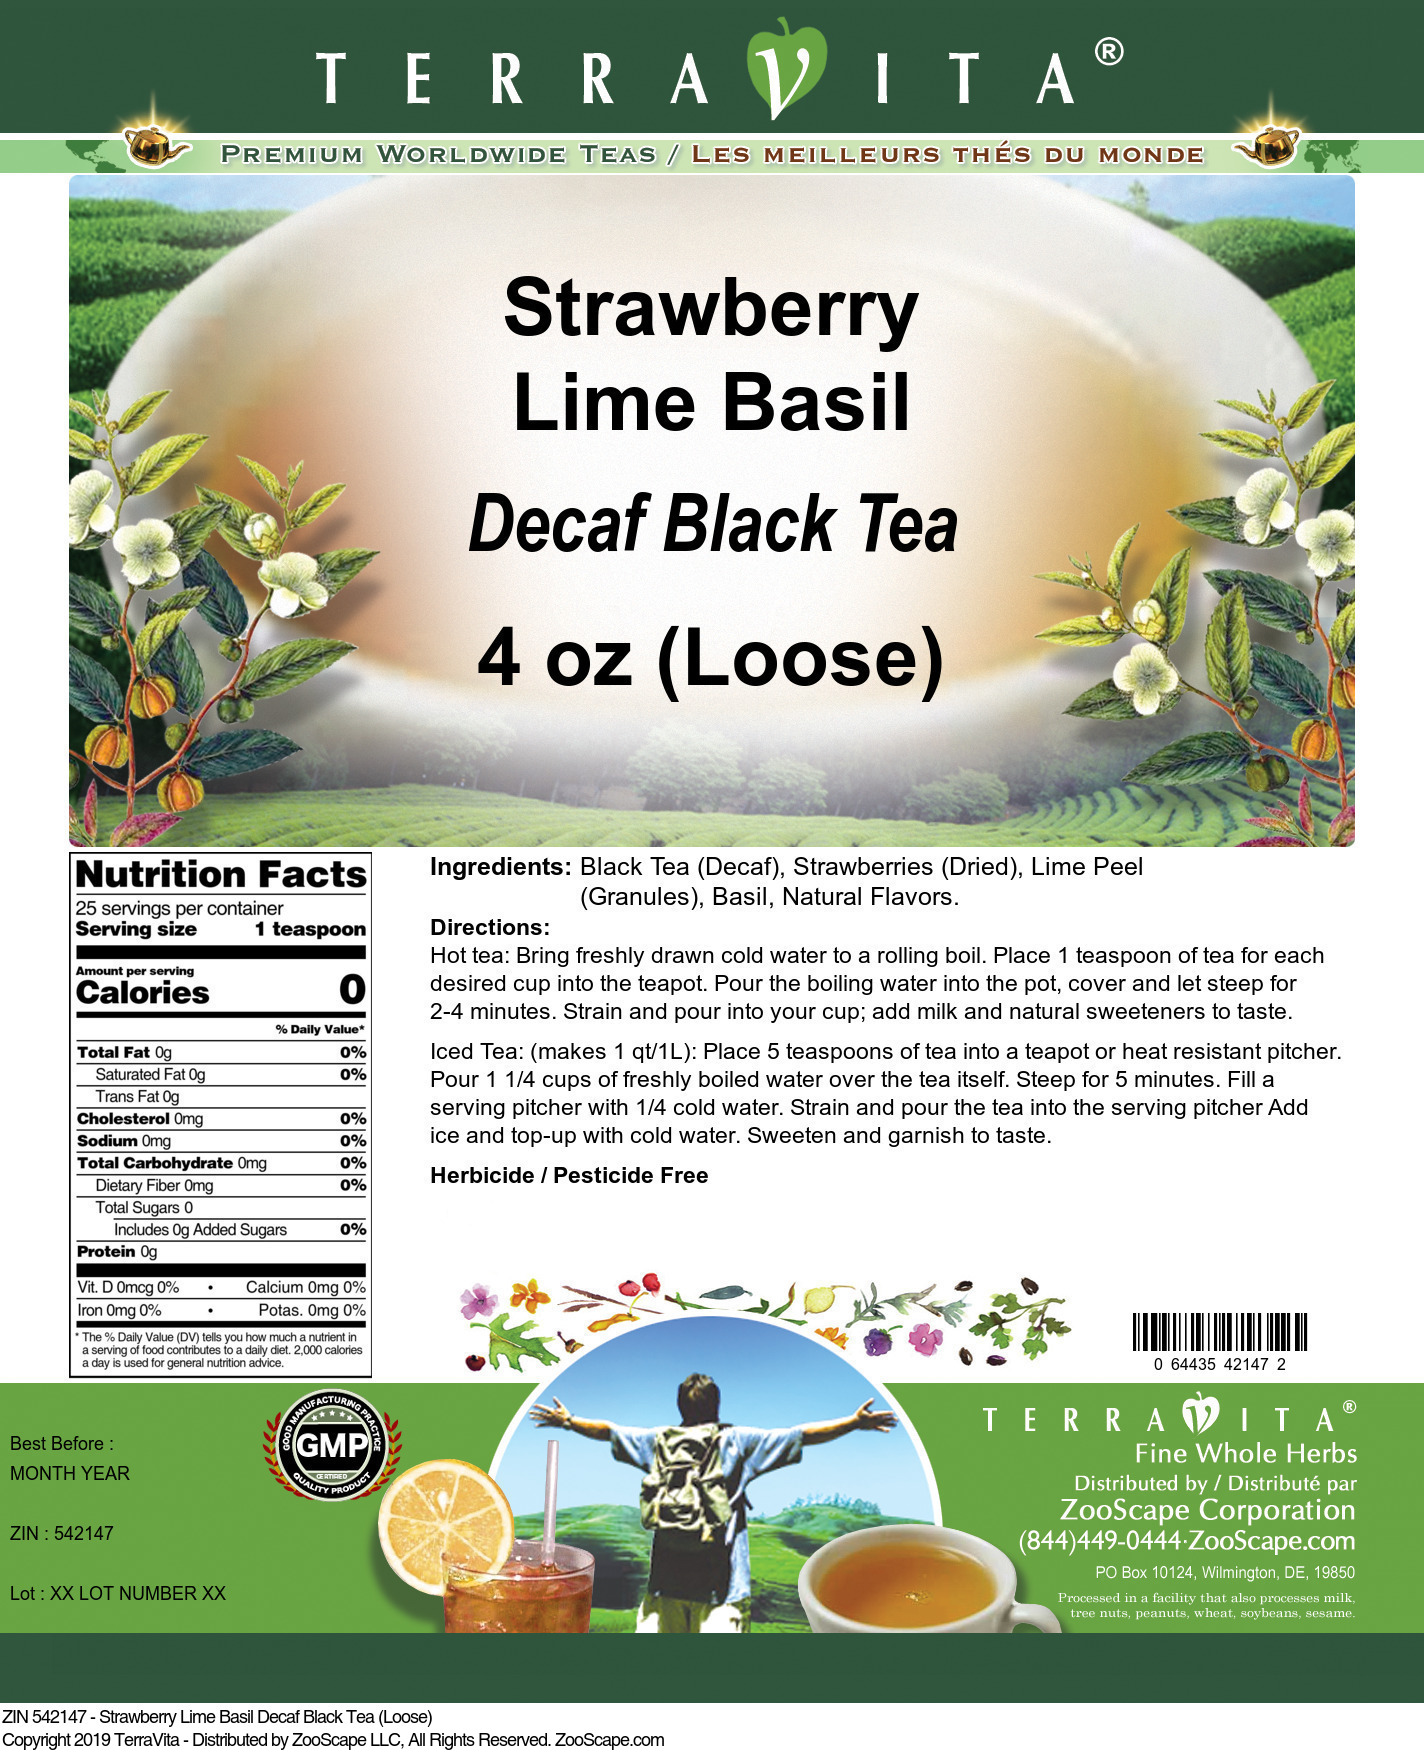 Strawberry Lime Basil Decaf Black Tea (Loose) - Label